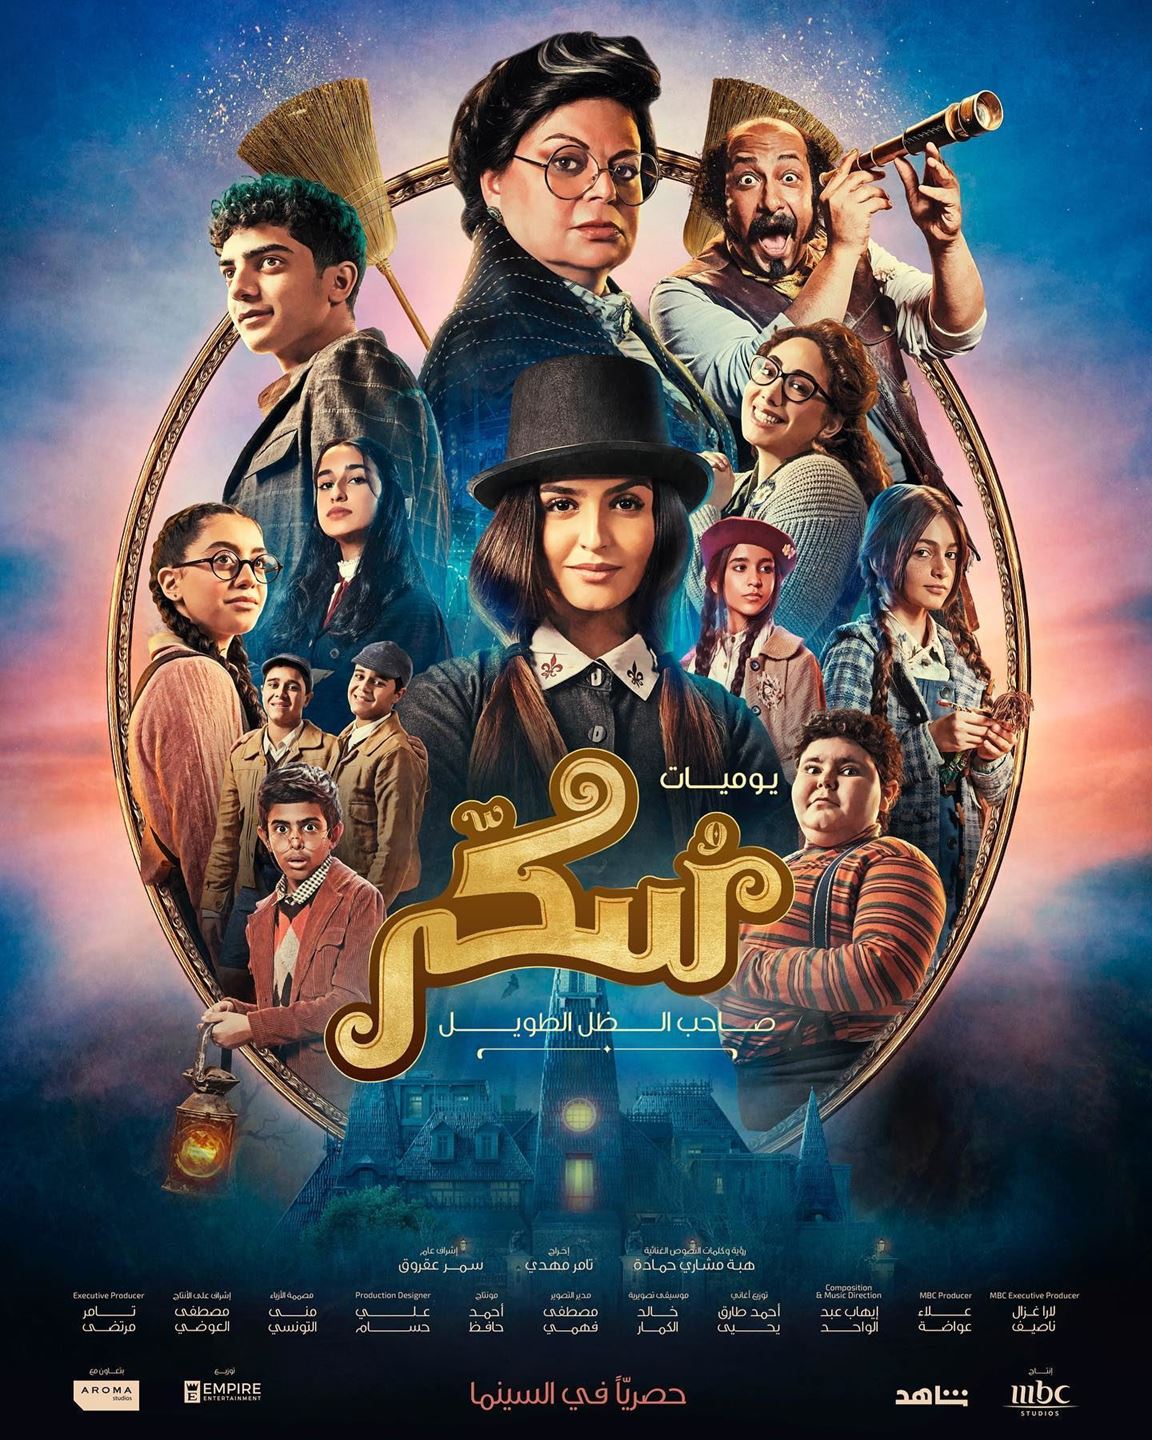 الفيلم الموسيقي العربي "سكر" بطولة حلا الترك في السينما